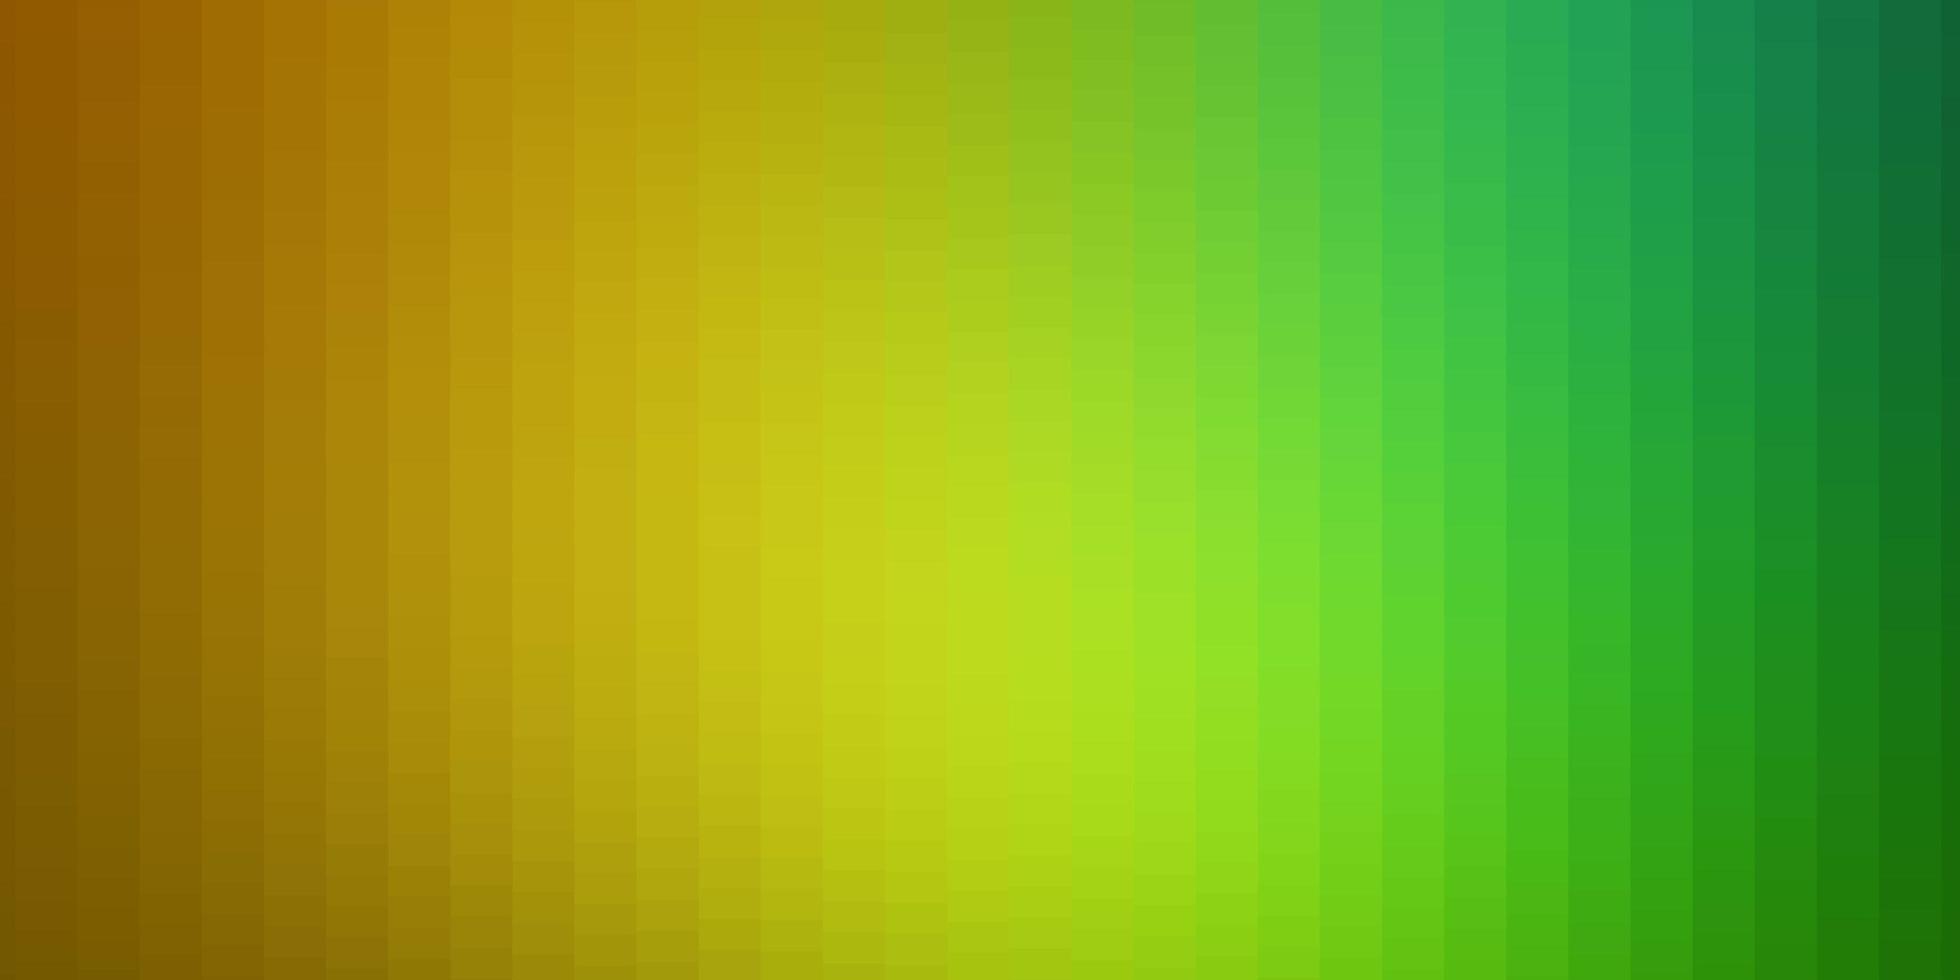 fond de vecteur vert clair, jaune avec des rectangles.